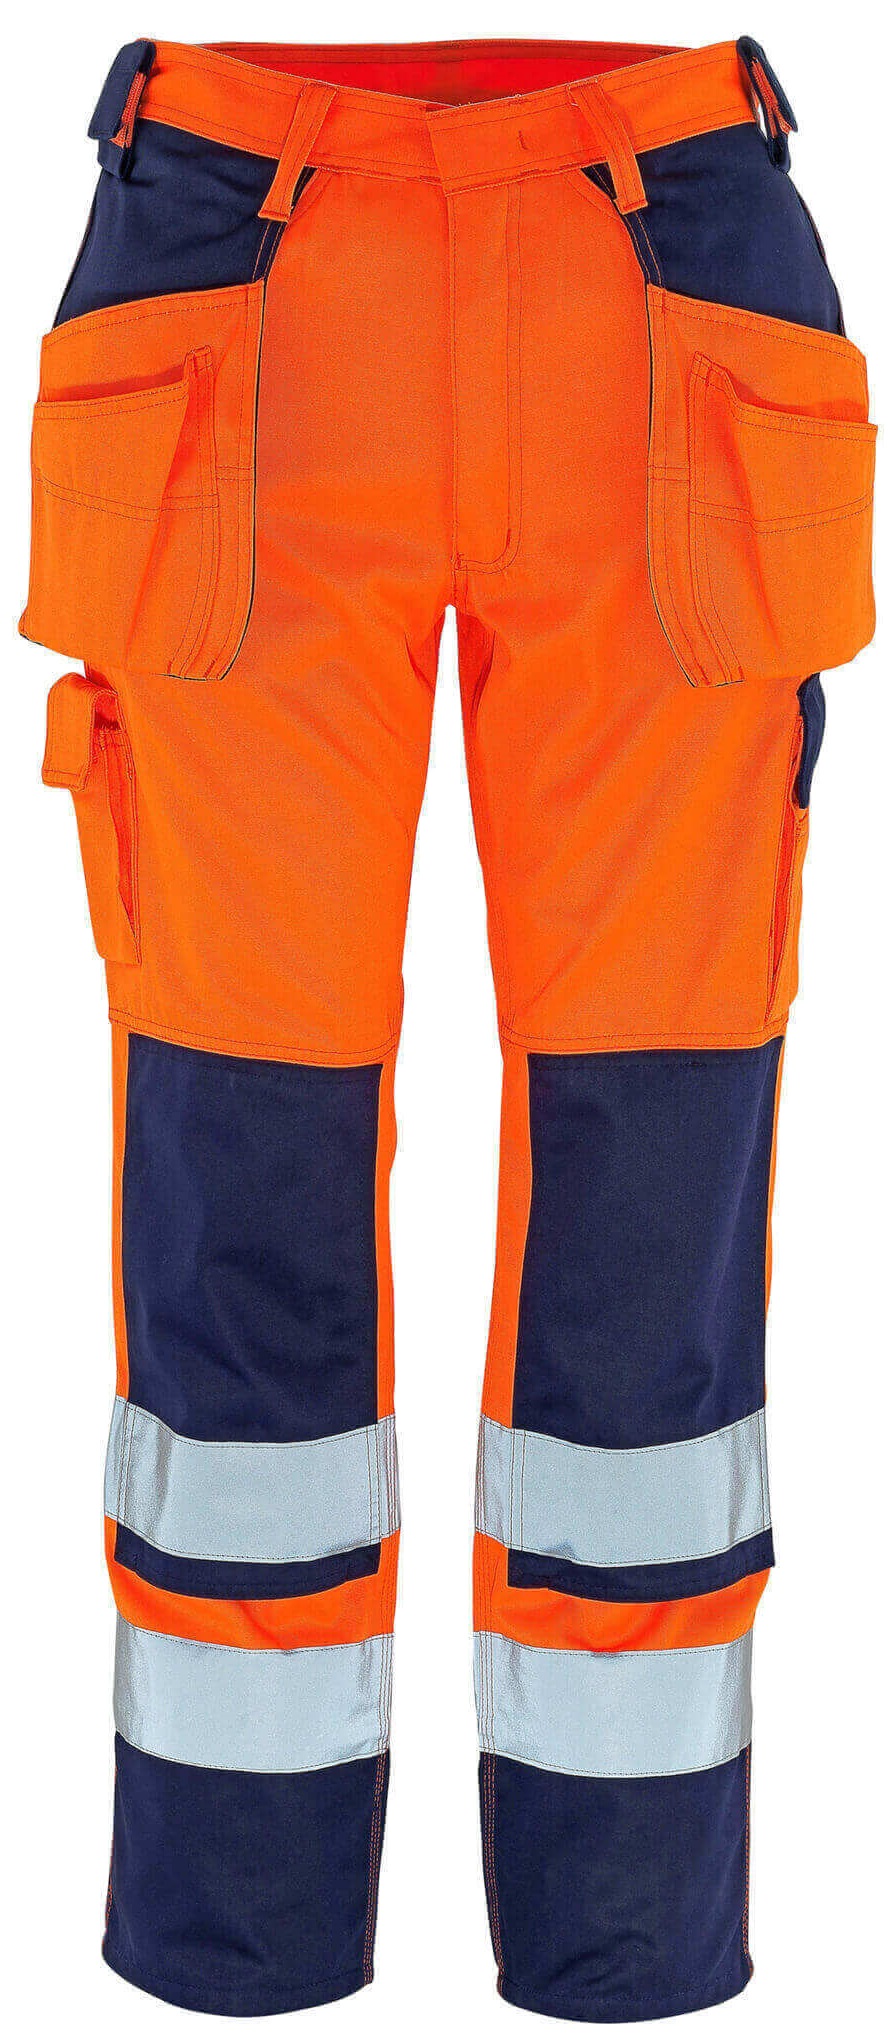 MASCOT-Warnschutz, Warn-Bund-Hose, Almas, 82 cm, 310 g/m², orange/marine
